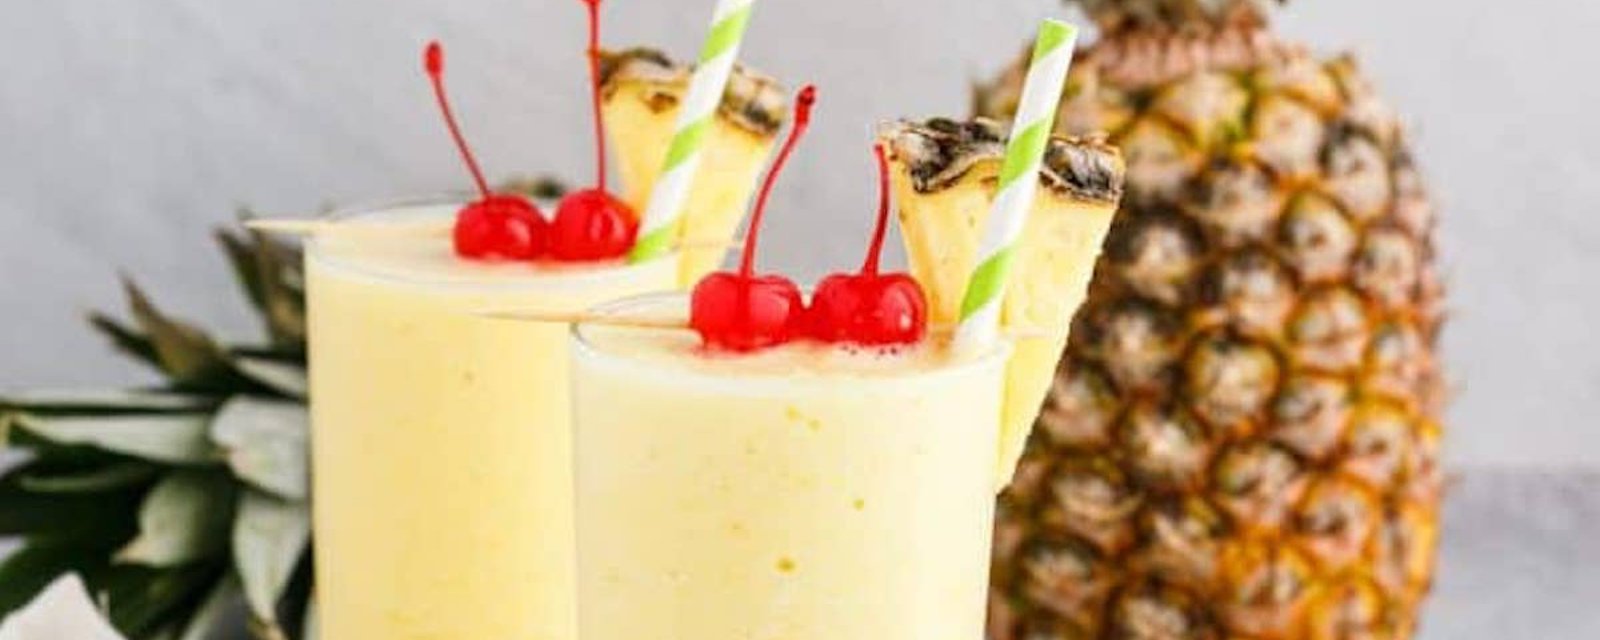 Le cocktail à savourer au bord de la piscine: la slush rhum, ananas et noix de coco!